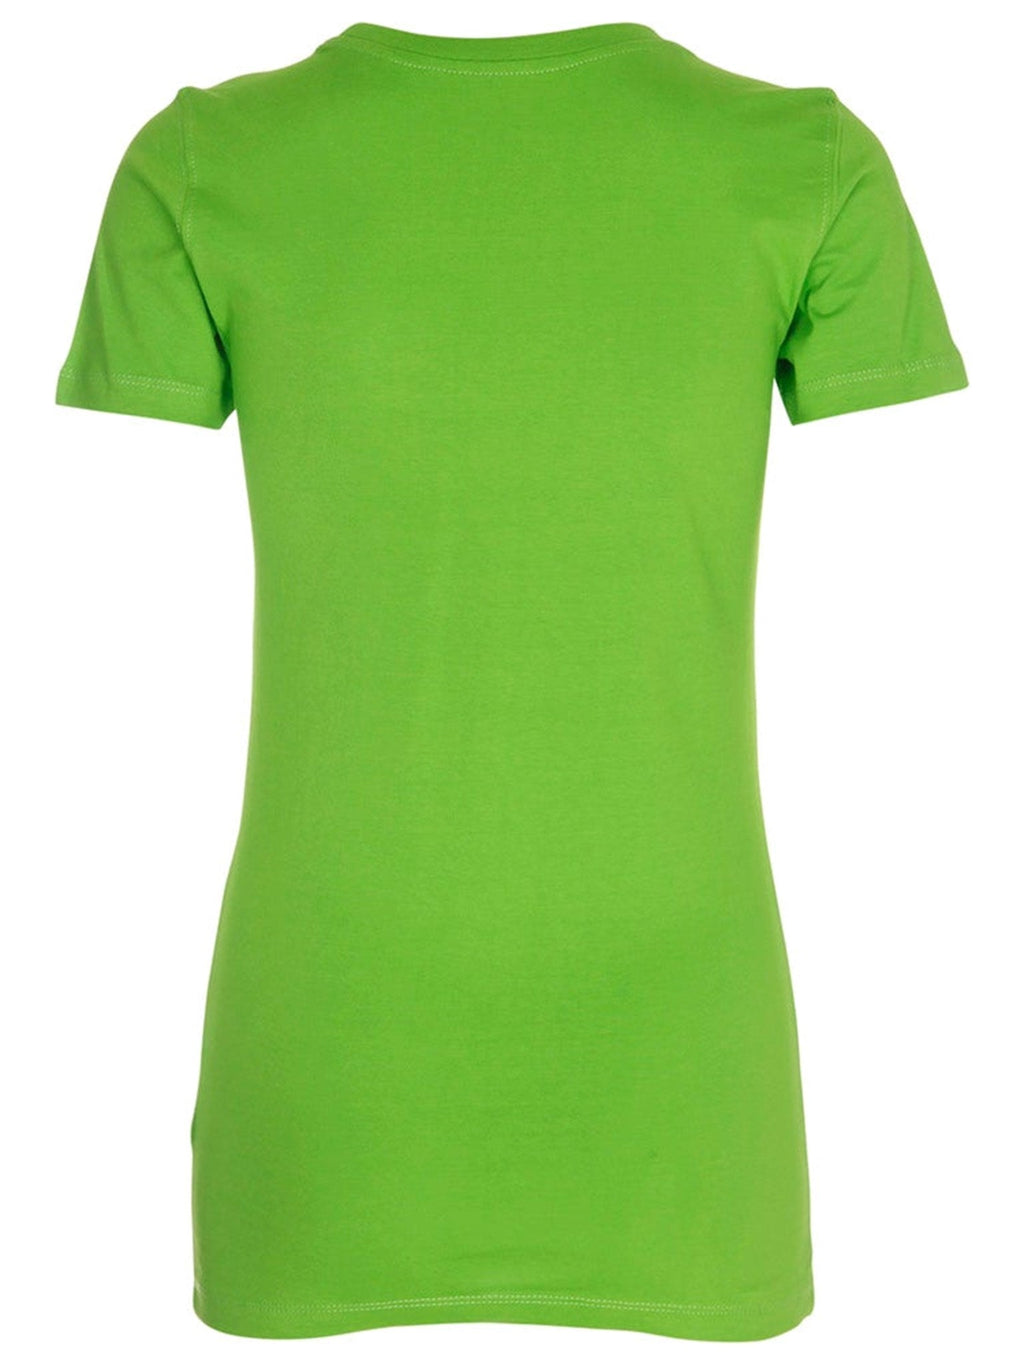 Eingebautes T -Shirt - Limettengrün